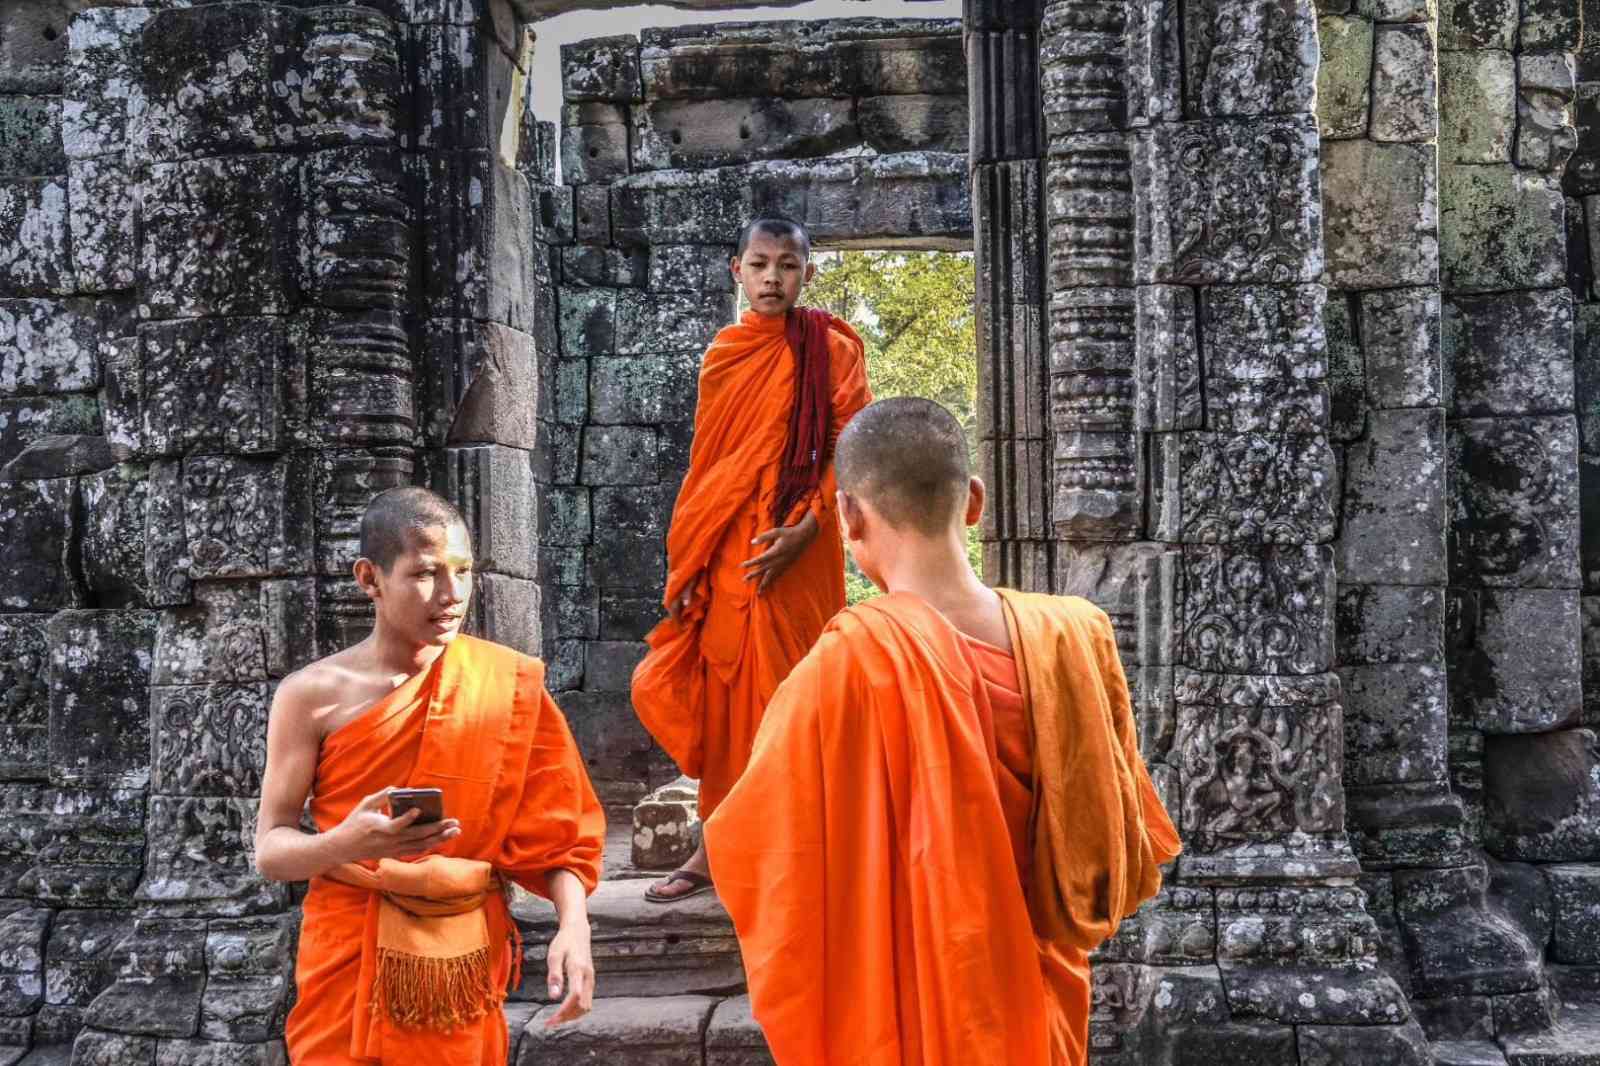 巴戎寺旅游之今天你笑了嘛？来自于高棉微笑的拷问！